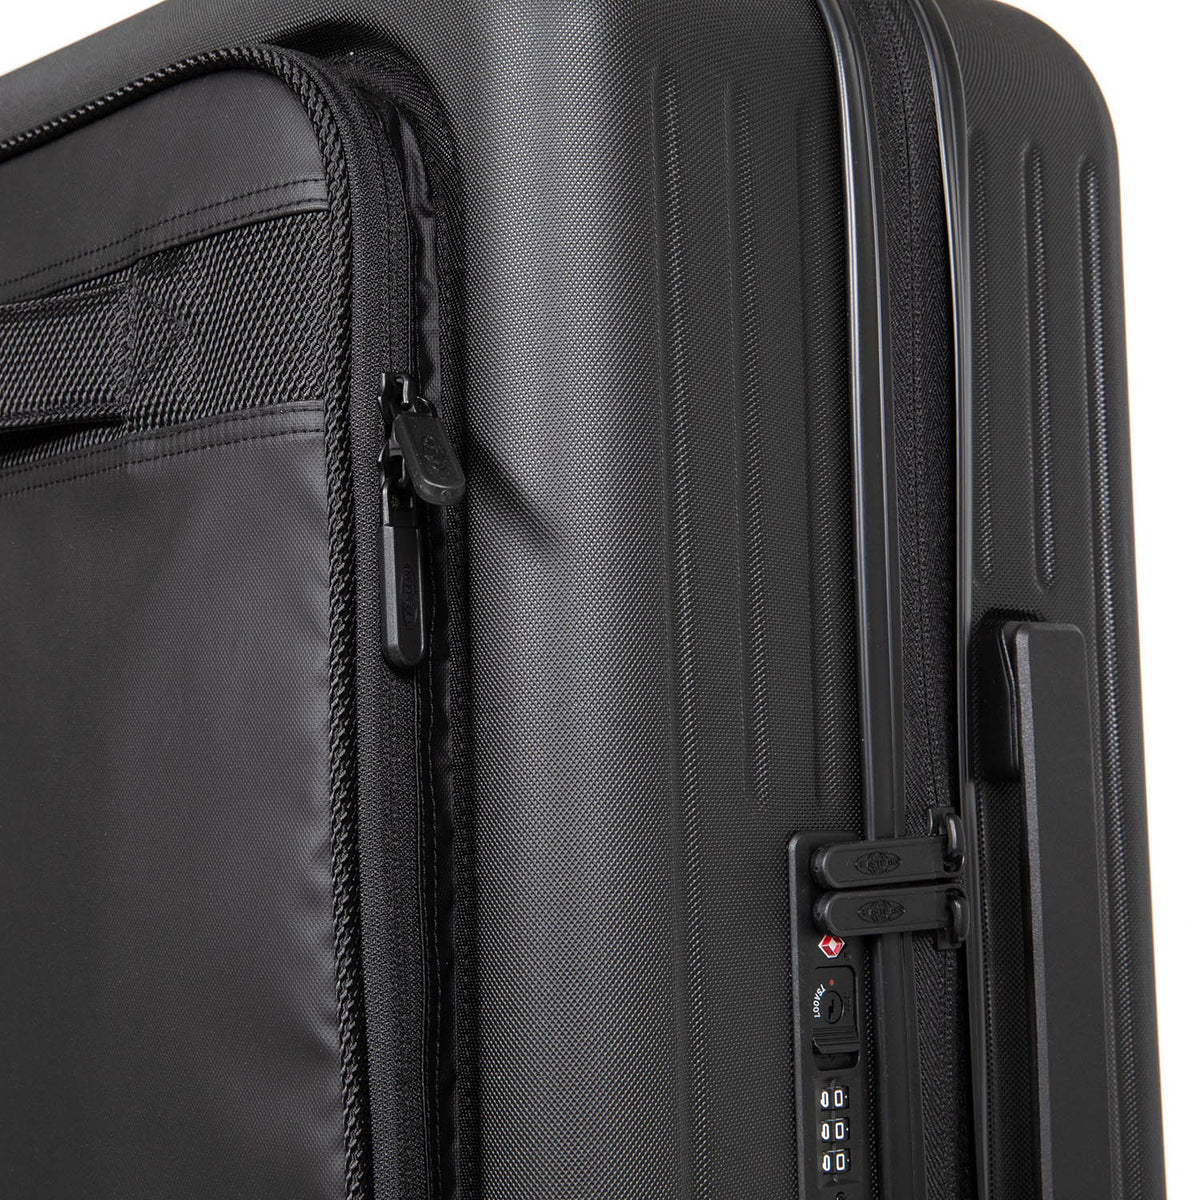 Eastpak Cnnct Case L Suitcase - Coat